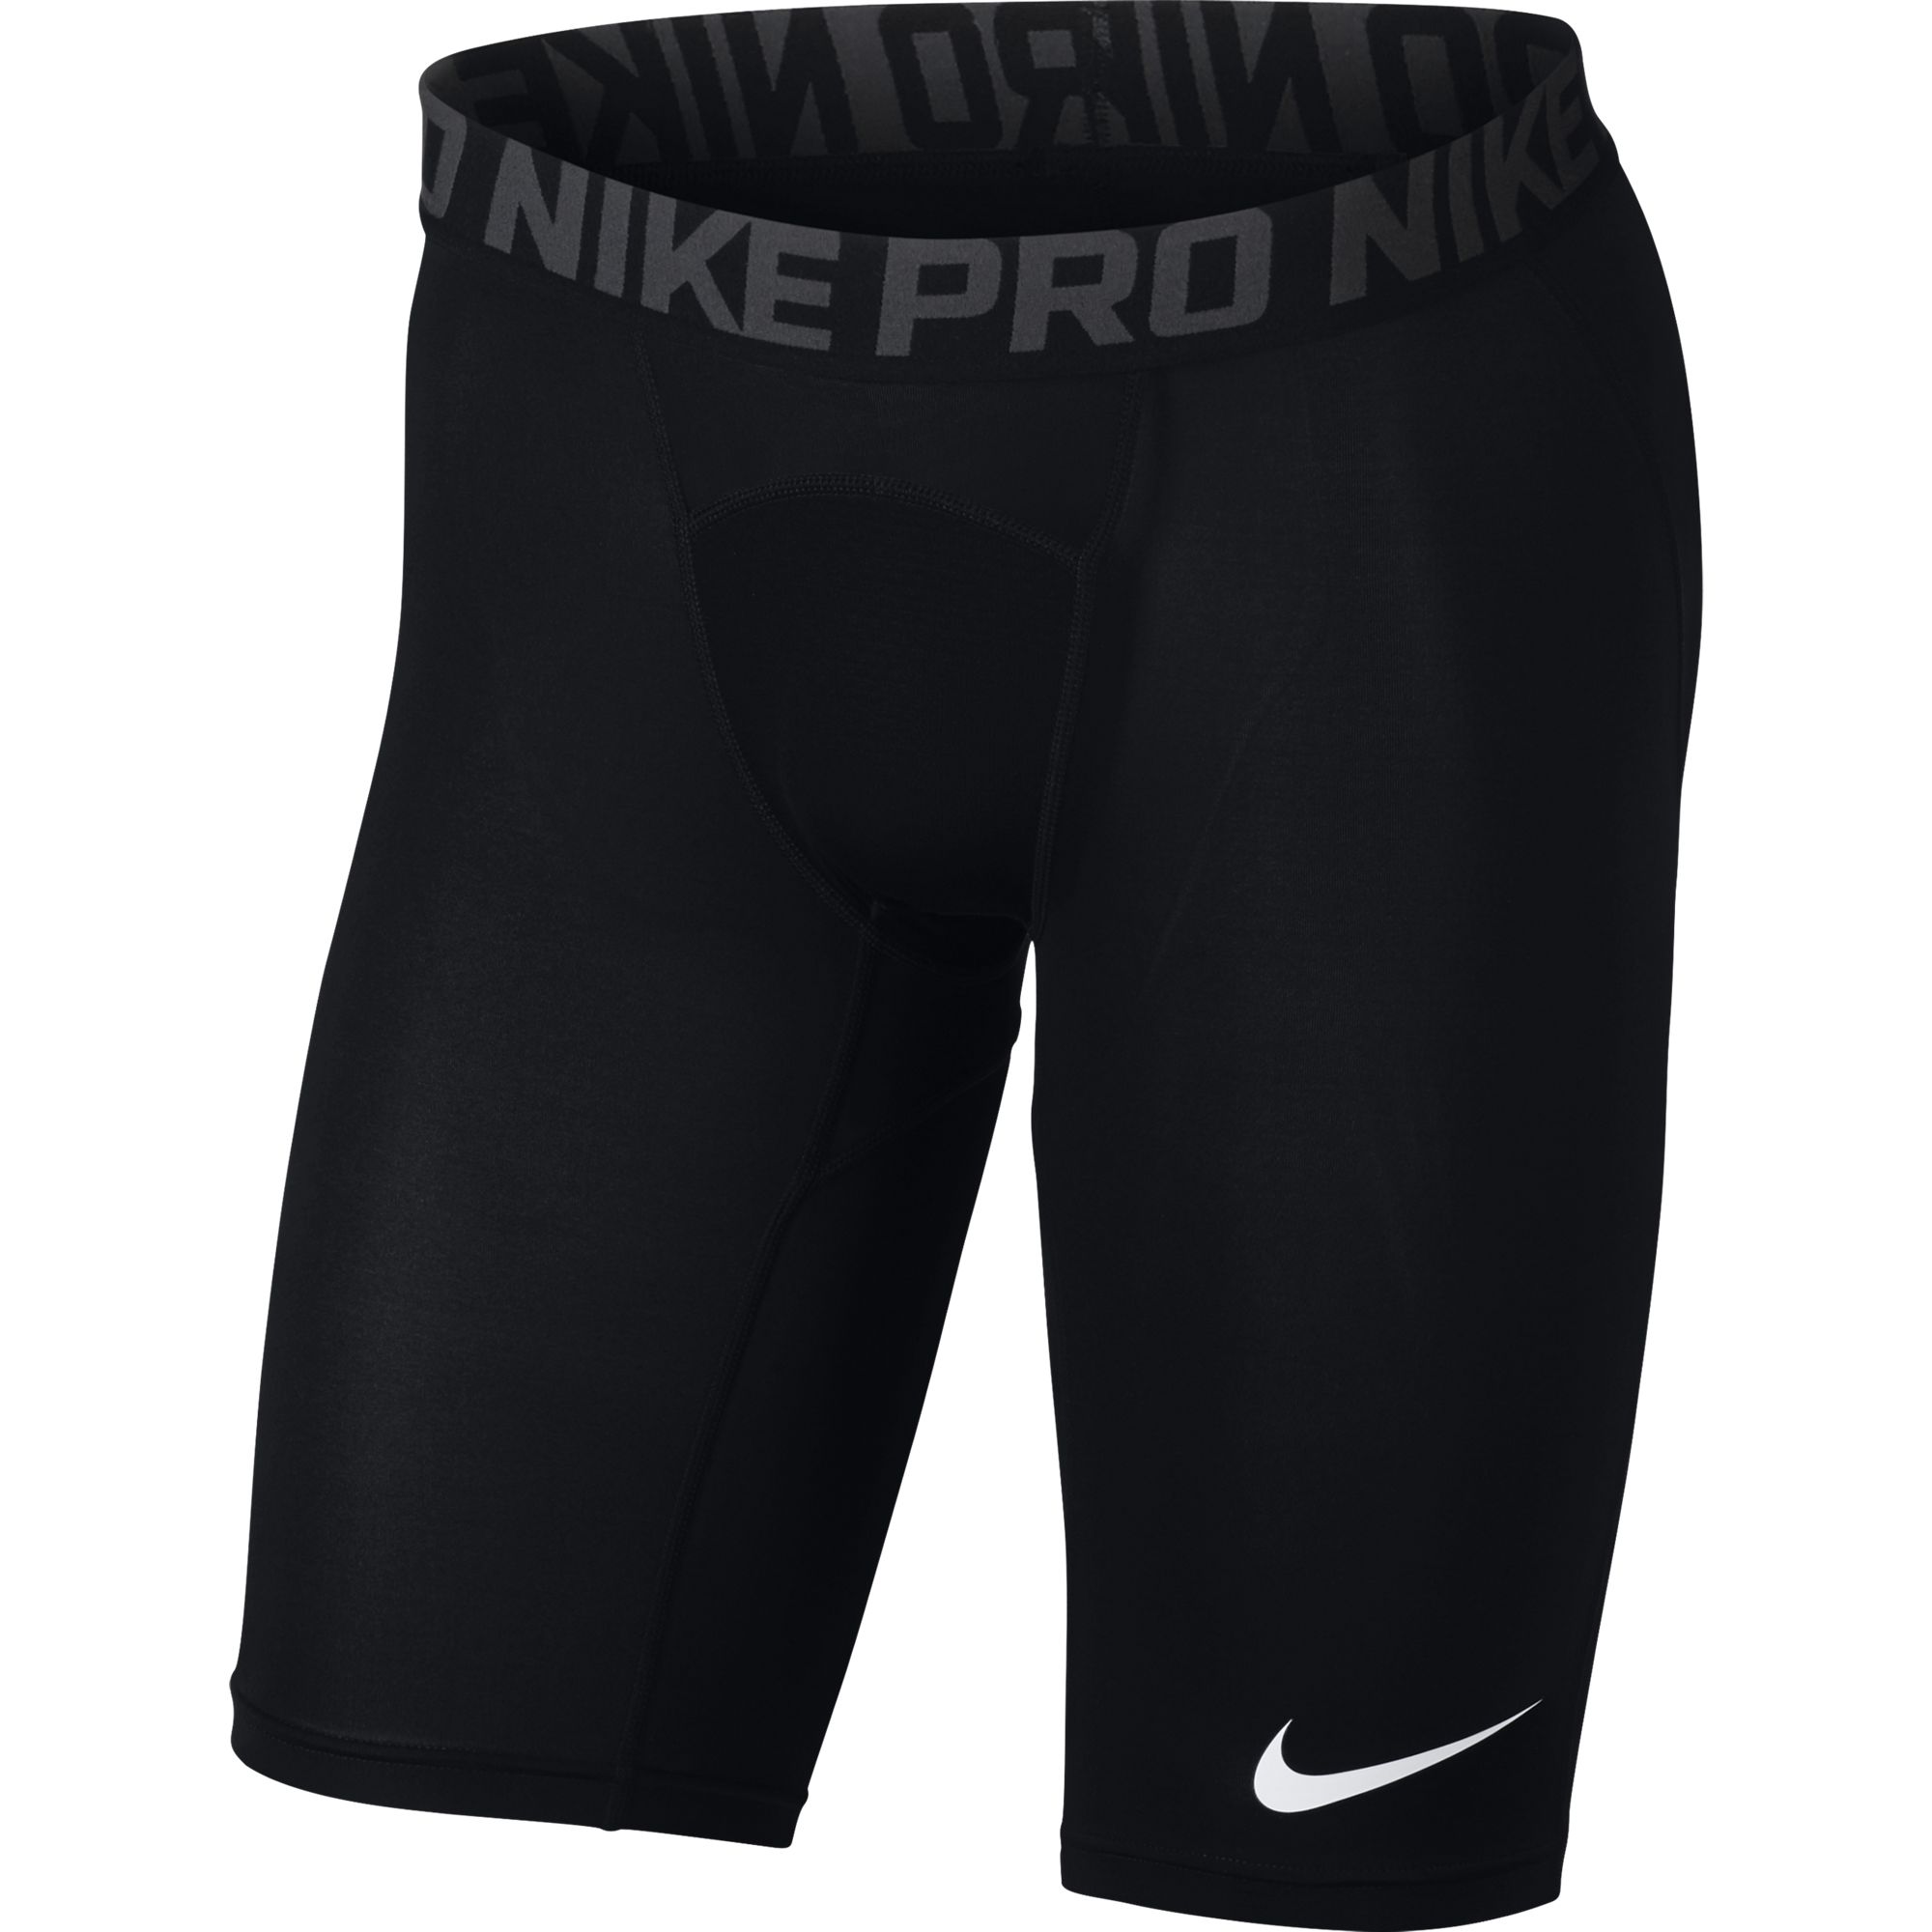 Велосипедки nike. Шорты Nike Pro Dri-Fit. Nike Pro шорты мужские компрессионные. Компрессионные шорты Nike Pro Combat. Nike m NP short.